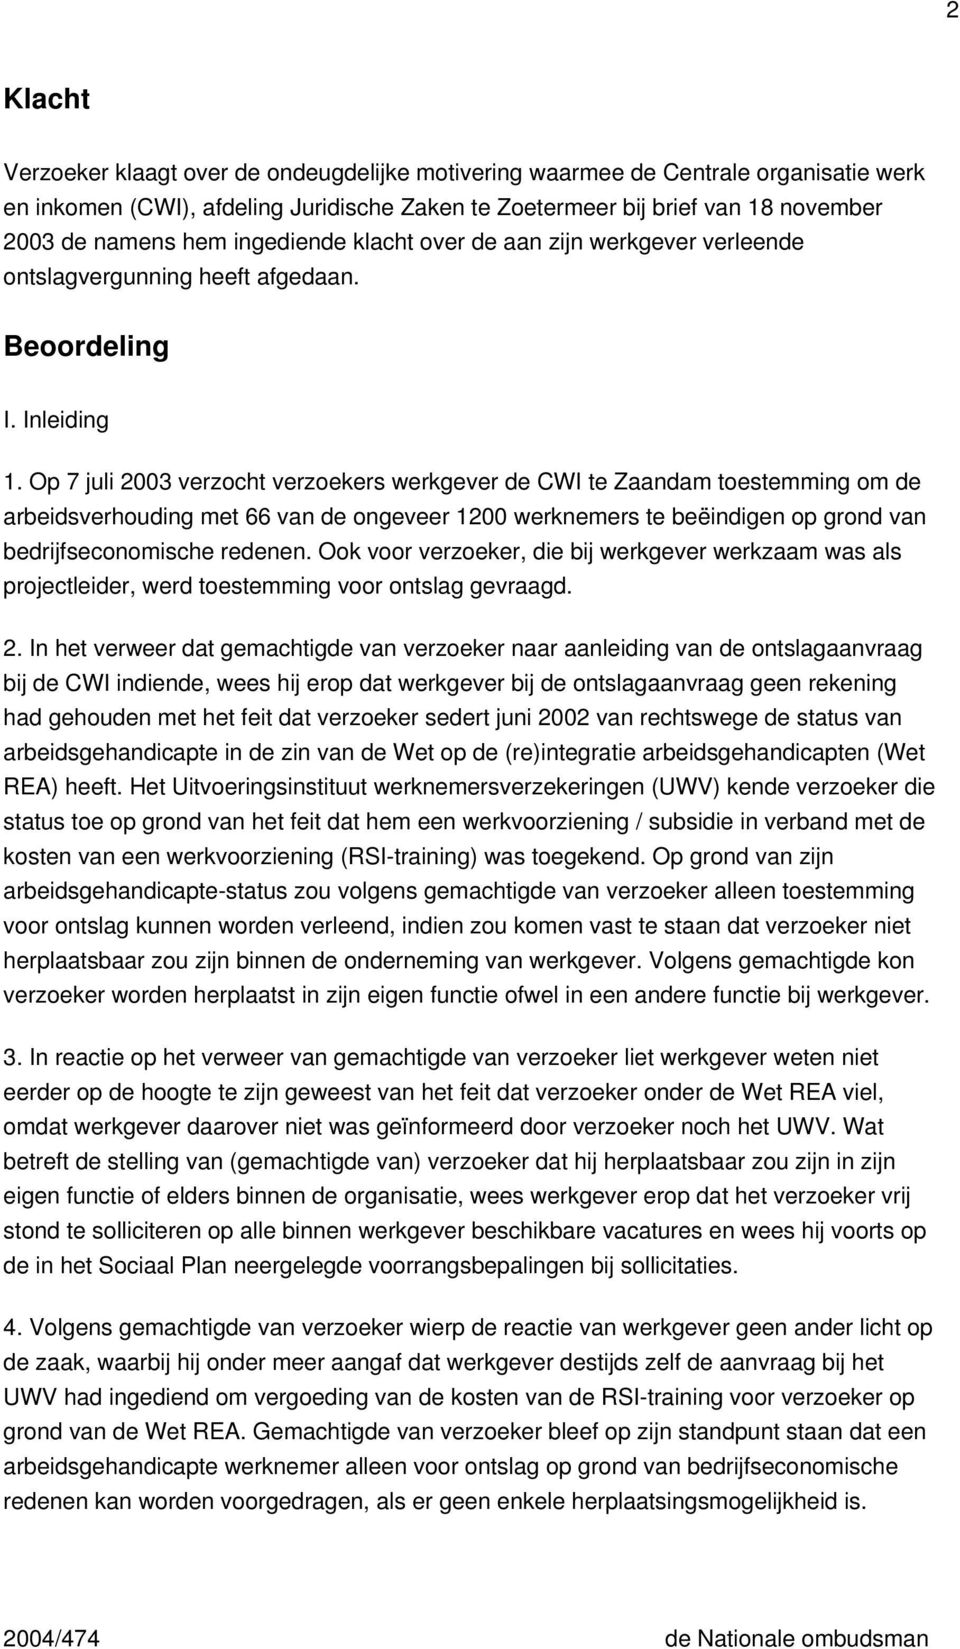 Op 7 juli 2003 verzocht verzoekers werkgever de CWI te Zaandam toestemming om de arbeidsverhouding met 66 van de ongeveer 1200 werknemers te beëindigen op grond van bedrijfseconomische redenen.